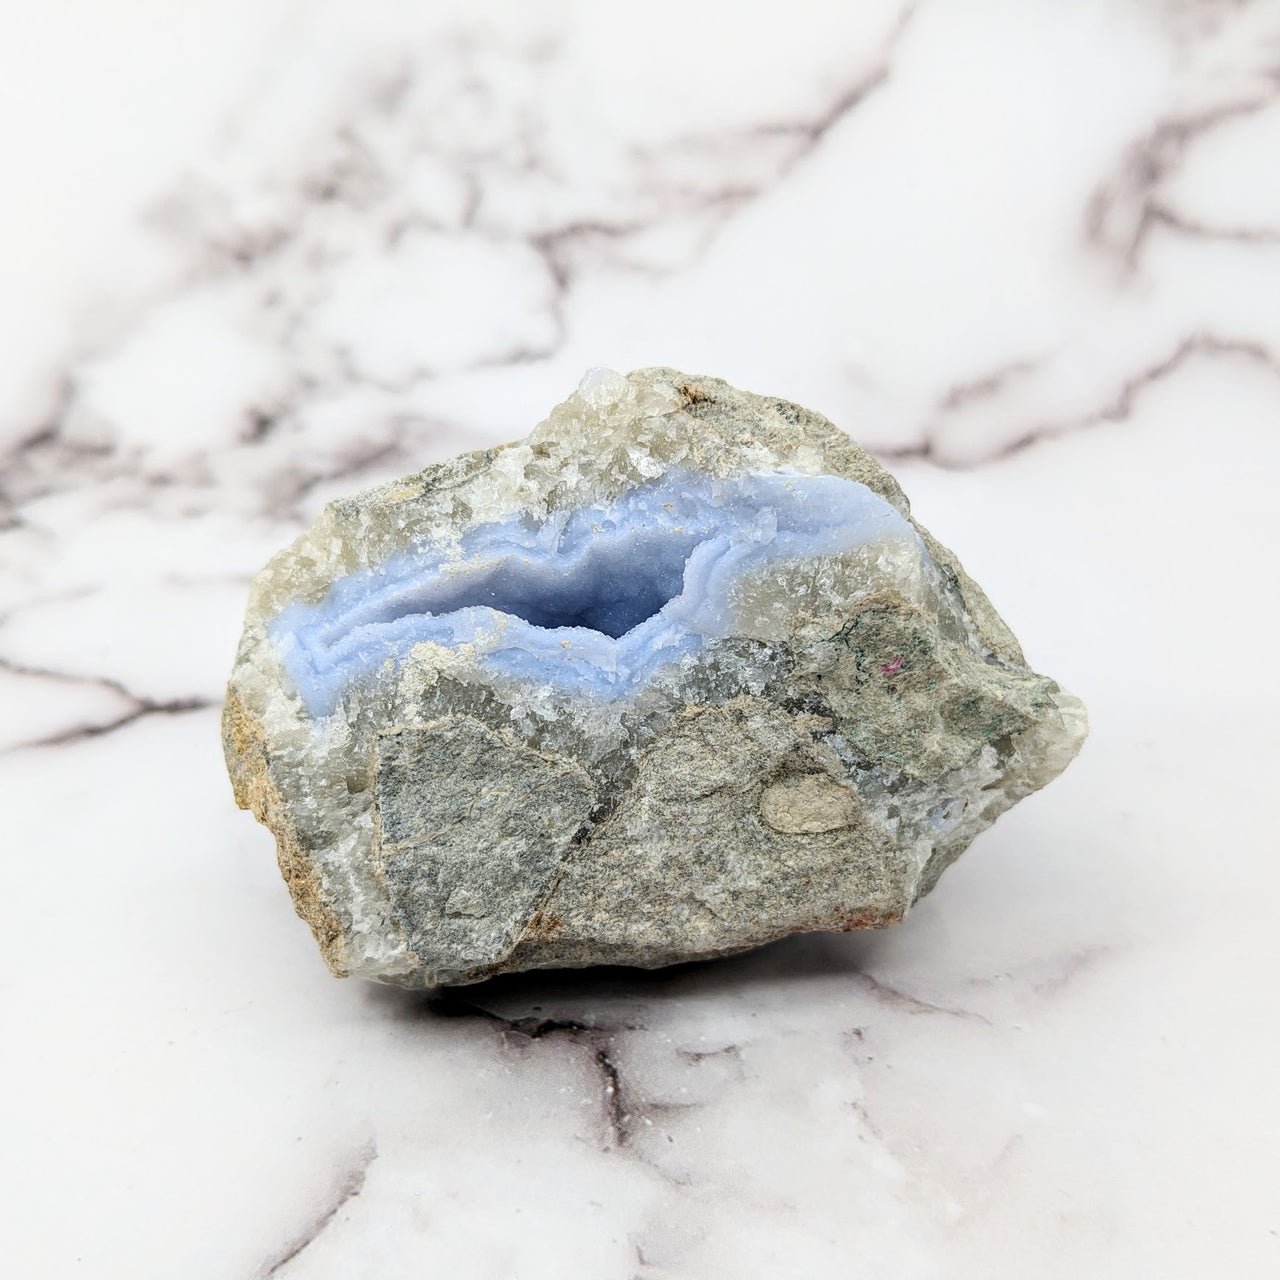 Blue Lace Agate 3" Rough Stone Specimen #SK9702